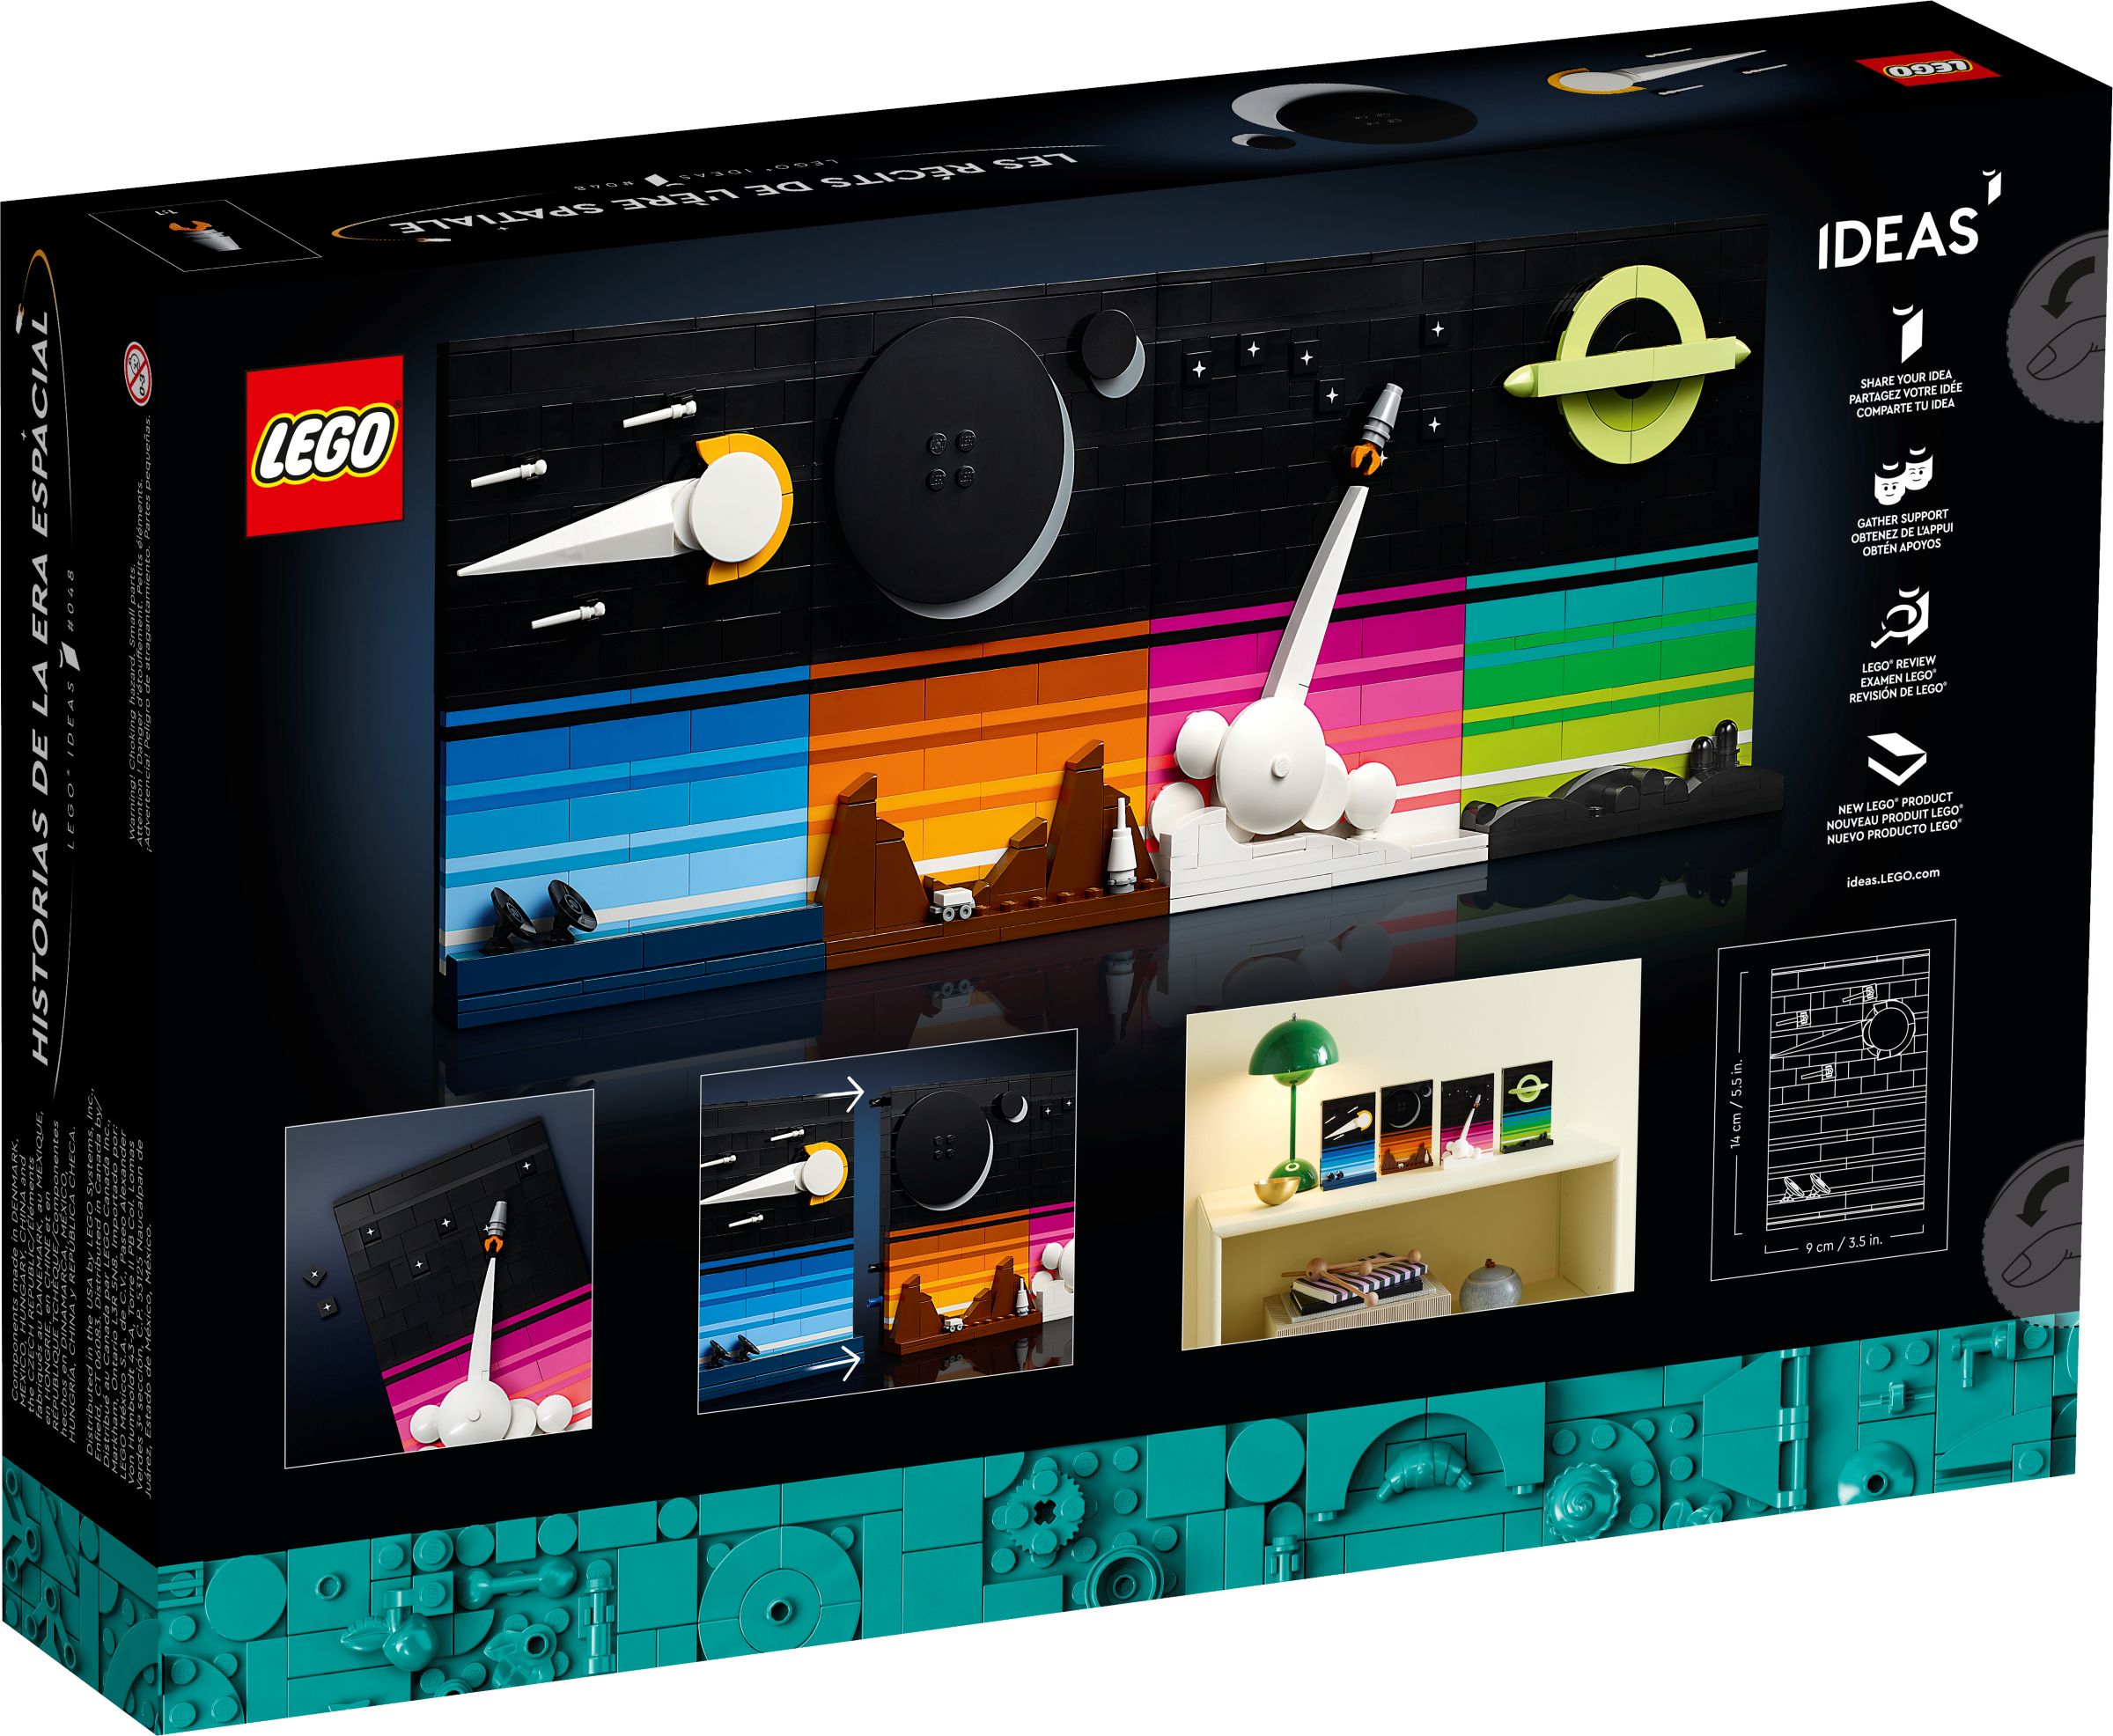 LEGO Ideas 21340 Geschichten aus dem Weltraumzeitalter LEGO_21340_alt4.jpg